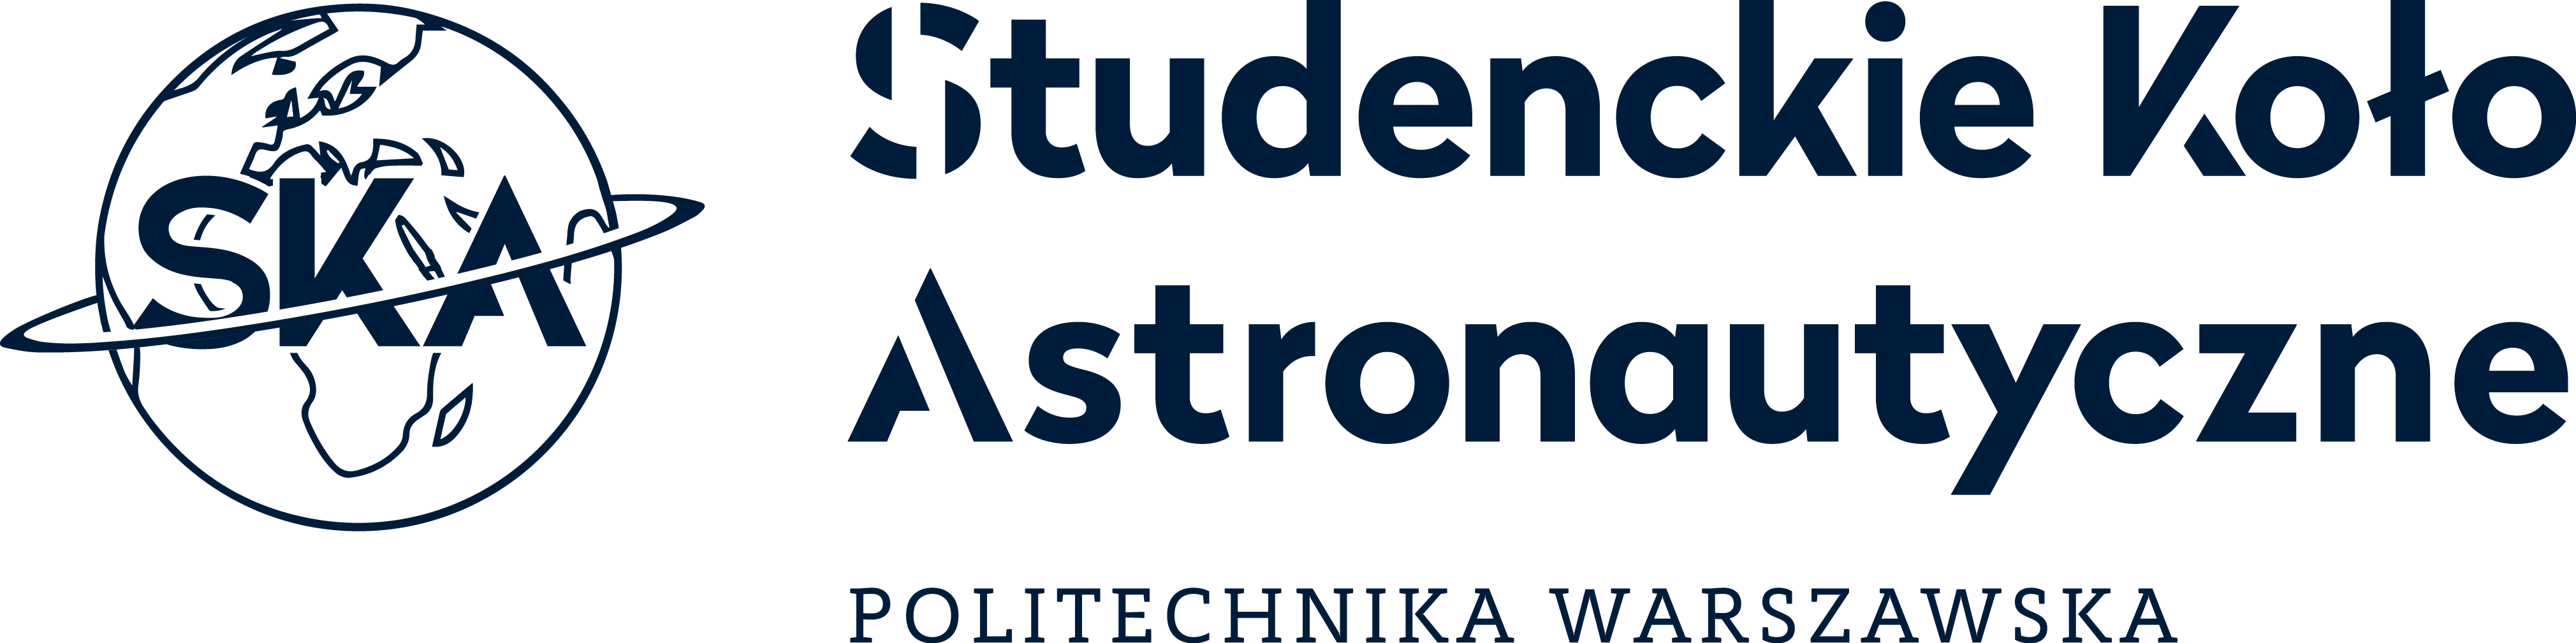 Oficjalne logo Studenckiego Koła Astronautycznego, wersja rastrowa z nazwą Koła, nie przeznaczona do druku.